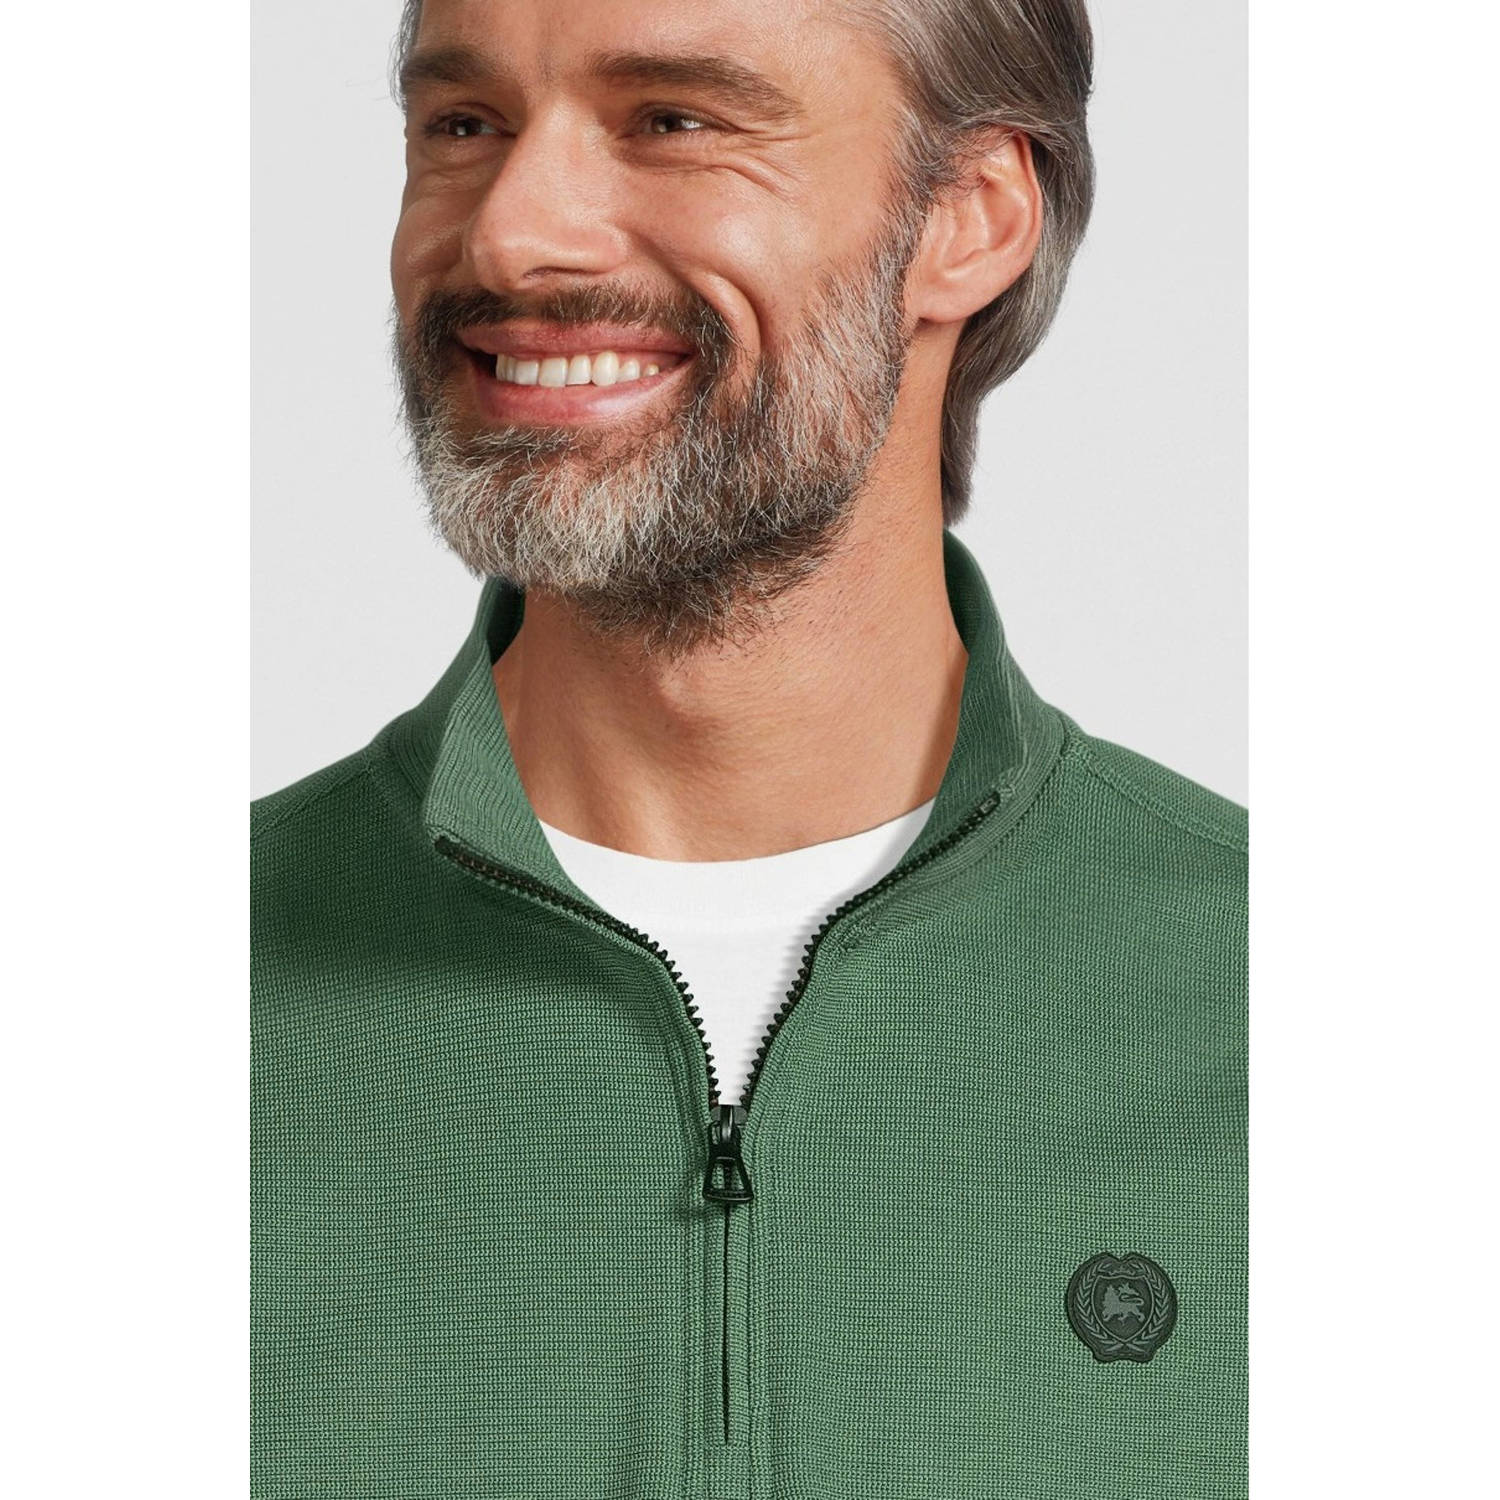 LERROS sweater met logo sage green